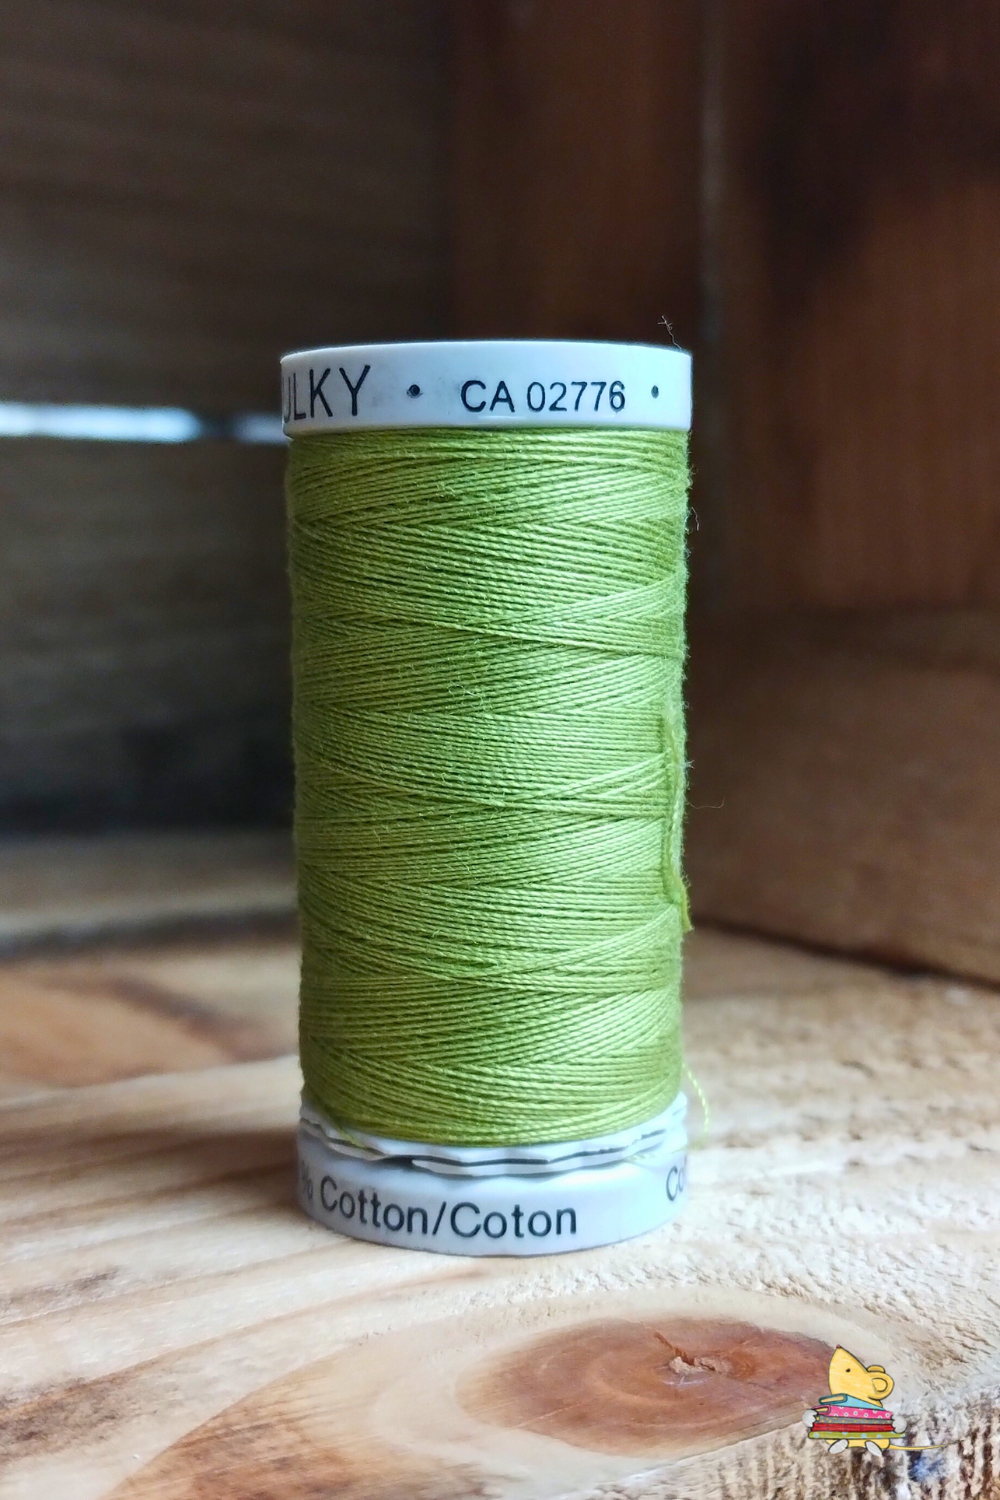 Gutermann Machine Embroidery/ Quilting Thread 100% Cotton 300m (1332)